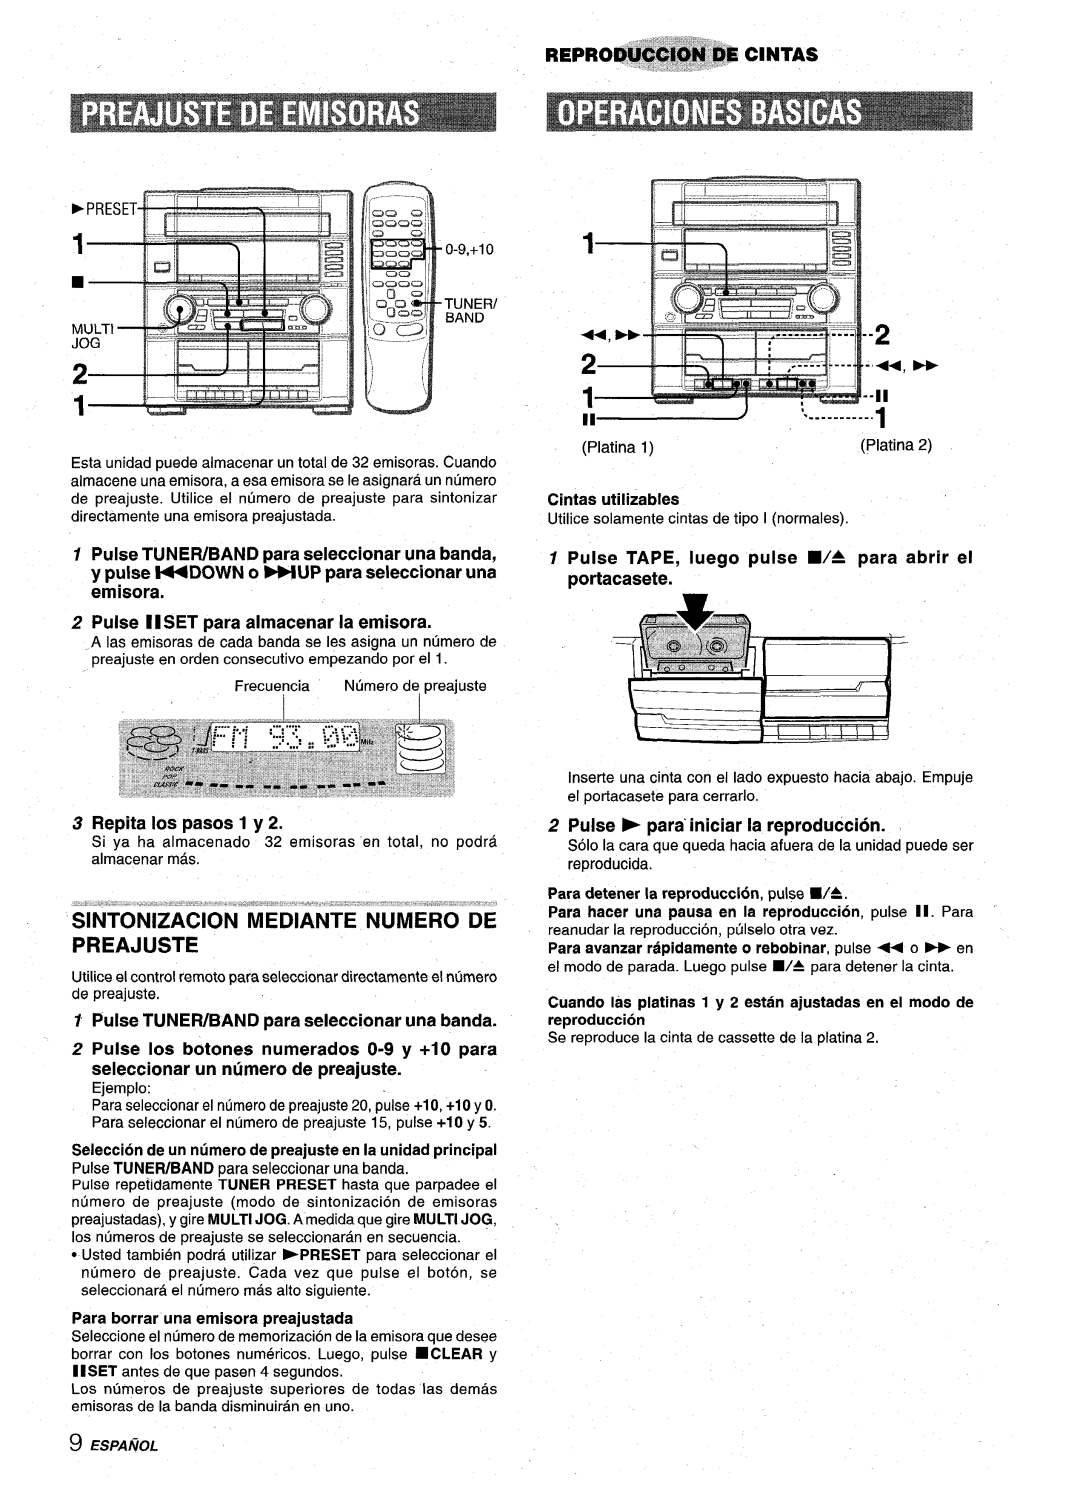 Aiwa Z-VR55 manual Sintonizacion Mediante Numero De Preajuste, Pulse II SET para almacenar la emisora, Repita Ios pasos 1 y 